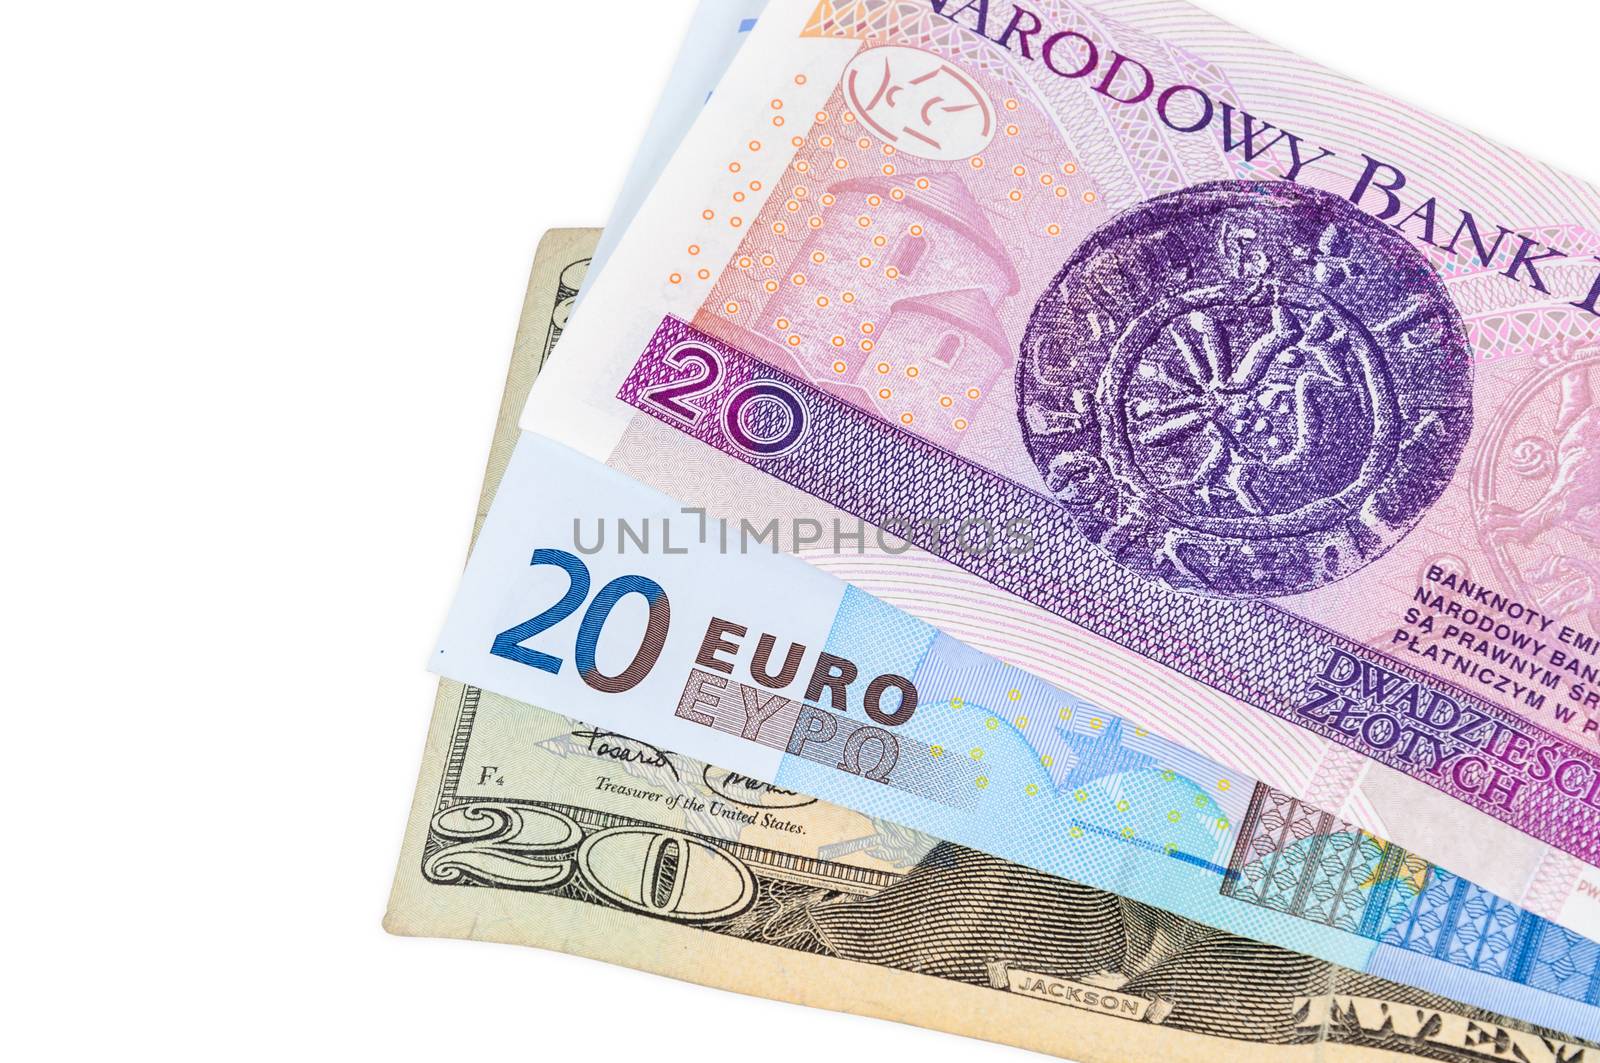 Banknotes of 20 dollars euro and polish zloty by mkos83